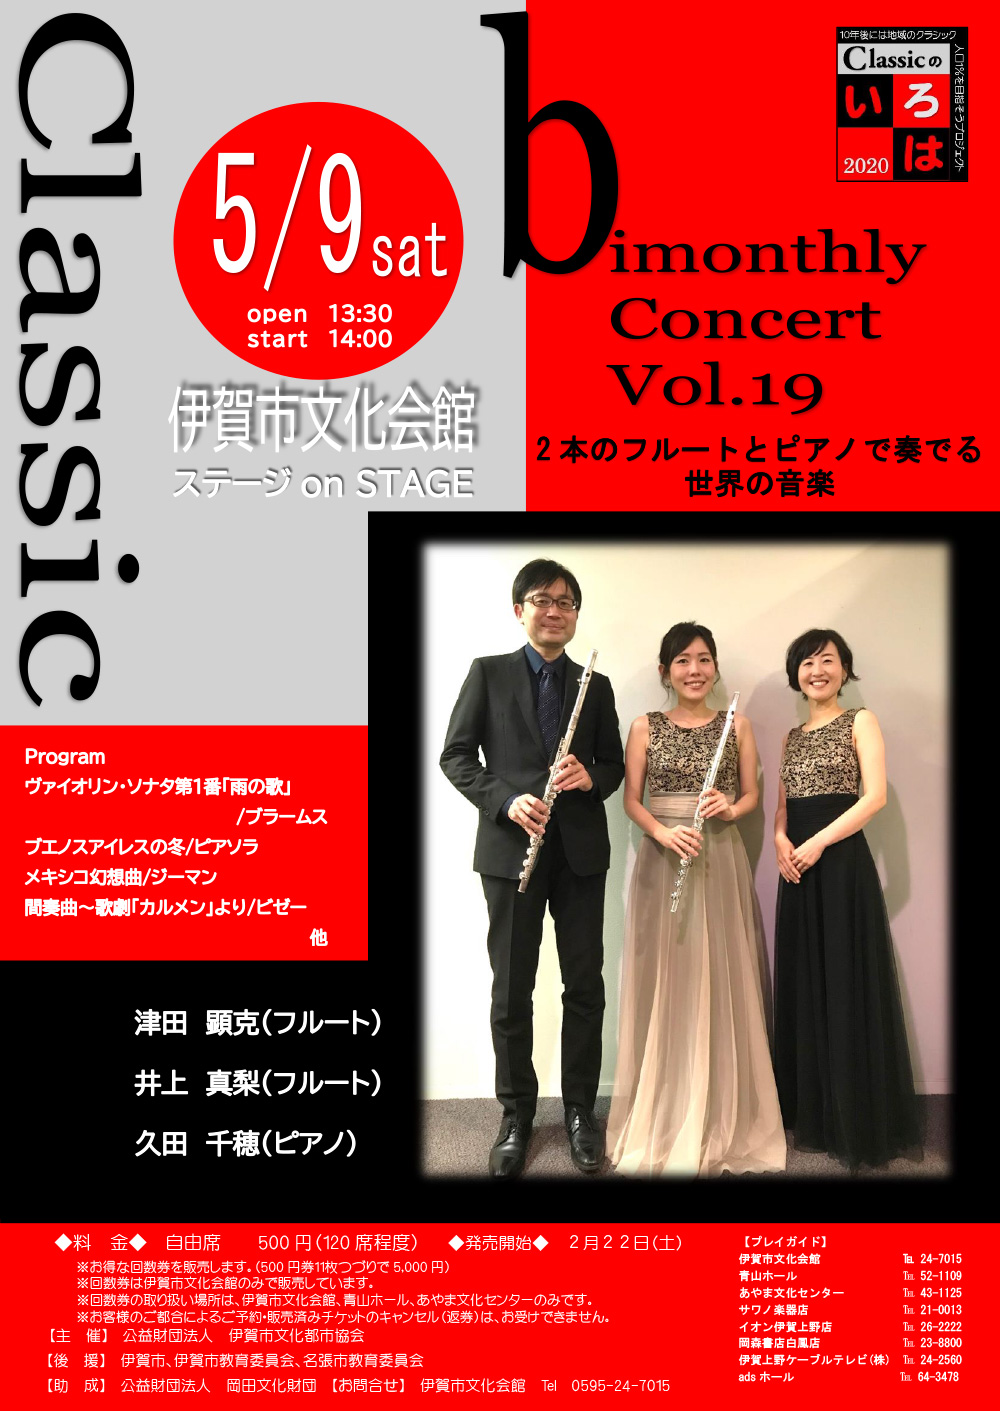 bimonthly Concert Vol.19 2本のフルートとピアノで奏でる世界の音楽